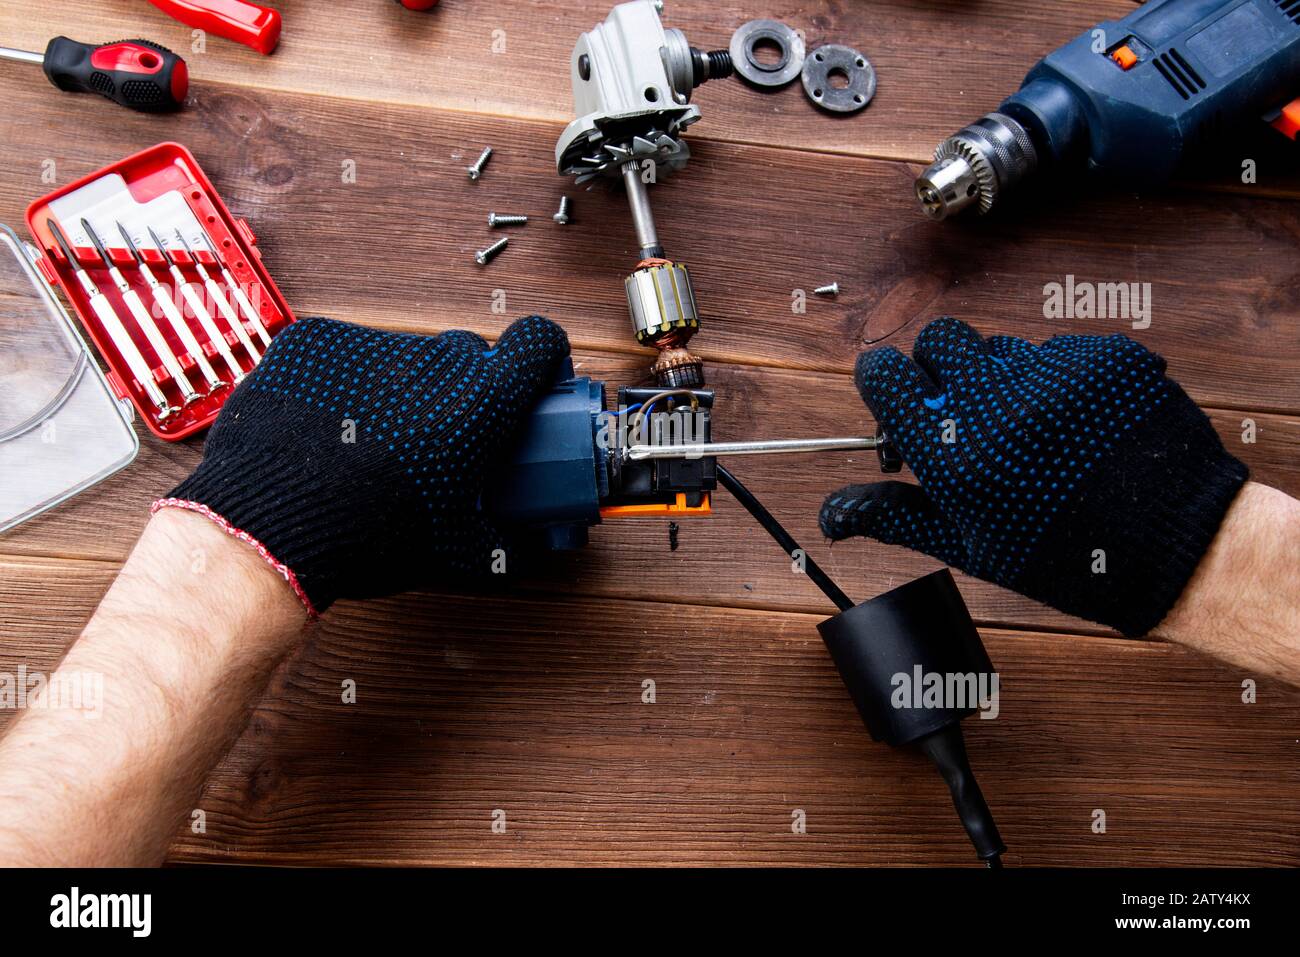 Le maître à réparer un appareil électrique cassée : perceuse, cutter sur  une table en bois. Atelier de réparation d'outils électriques Photo Stock -  Alamy